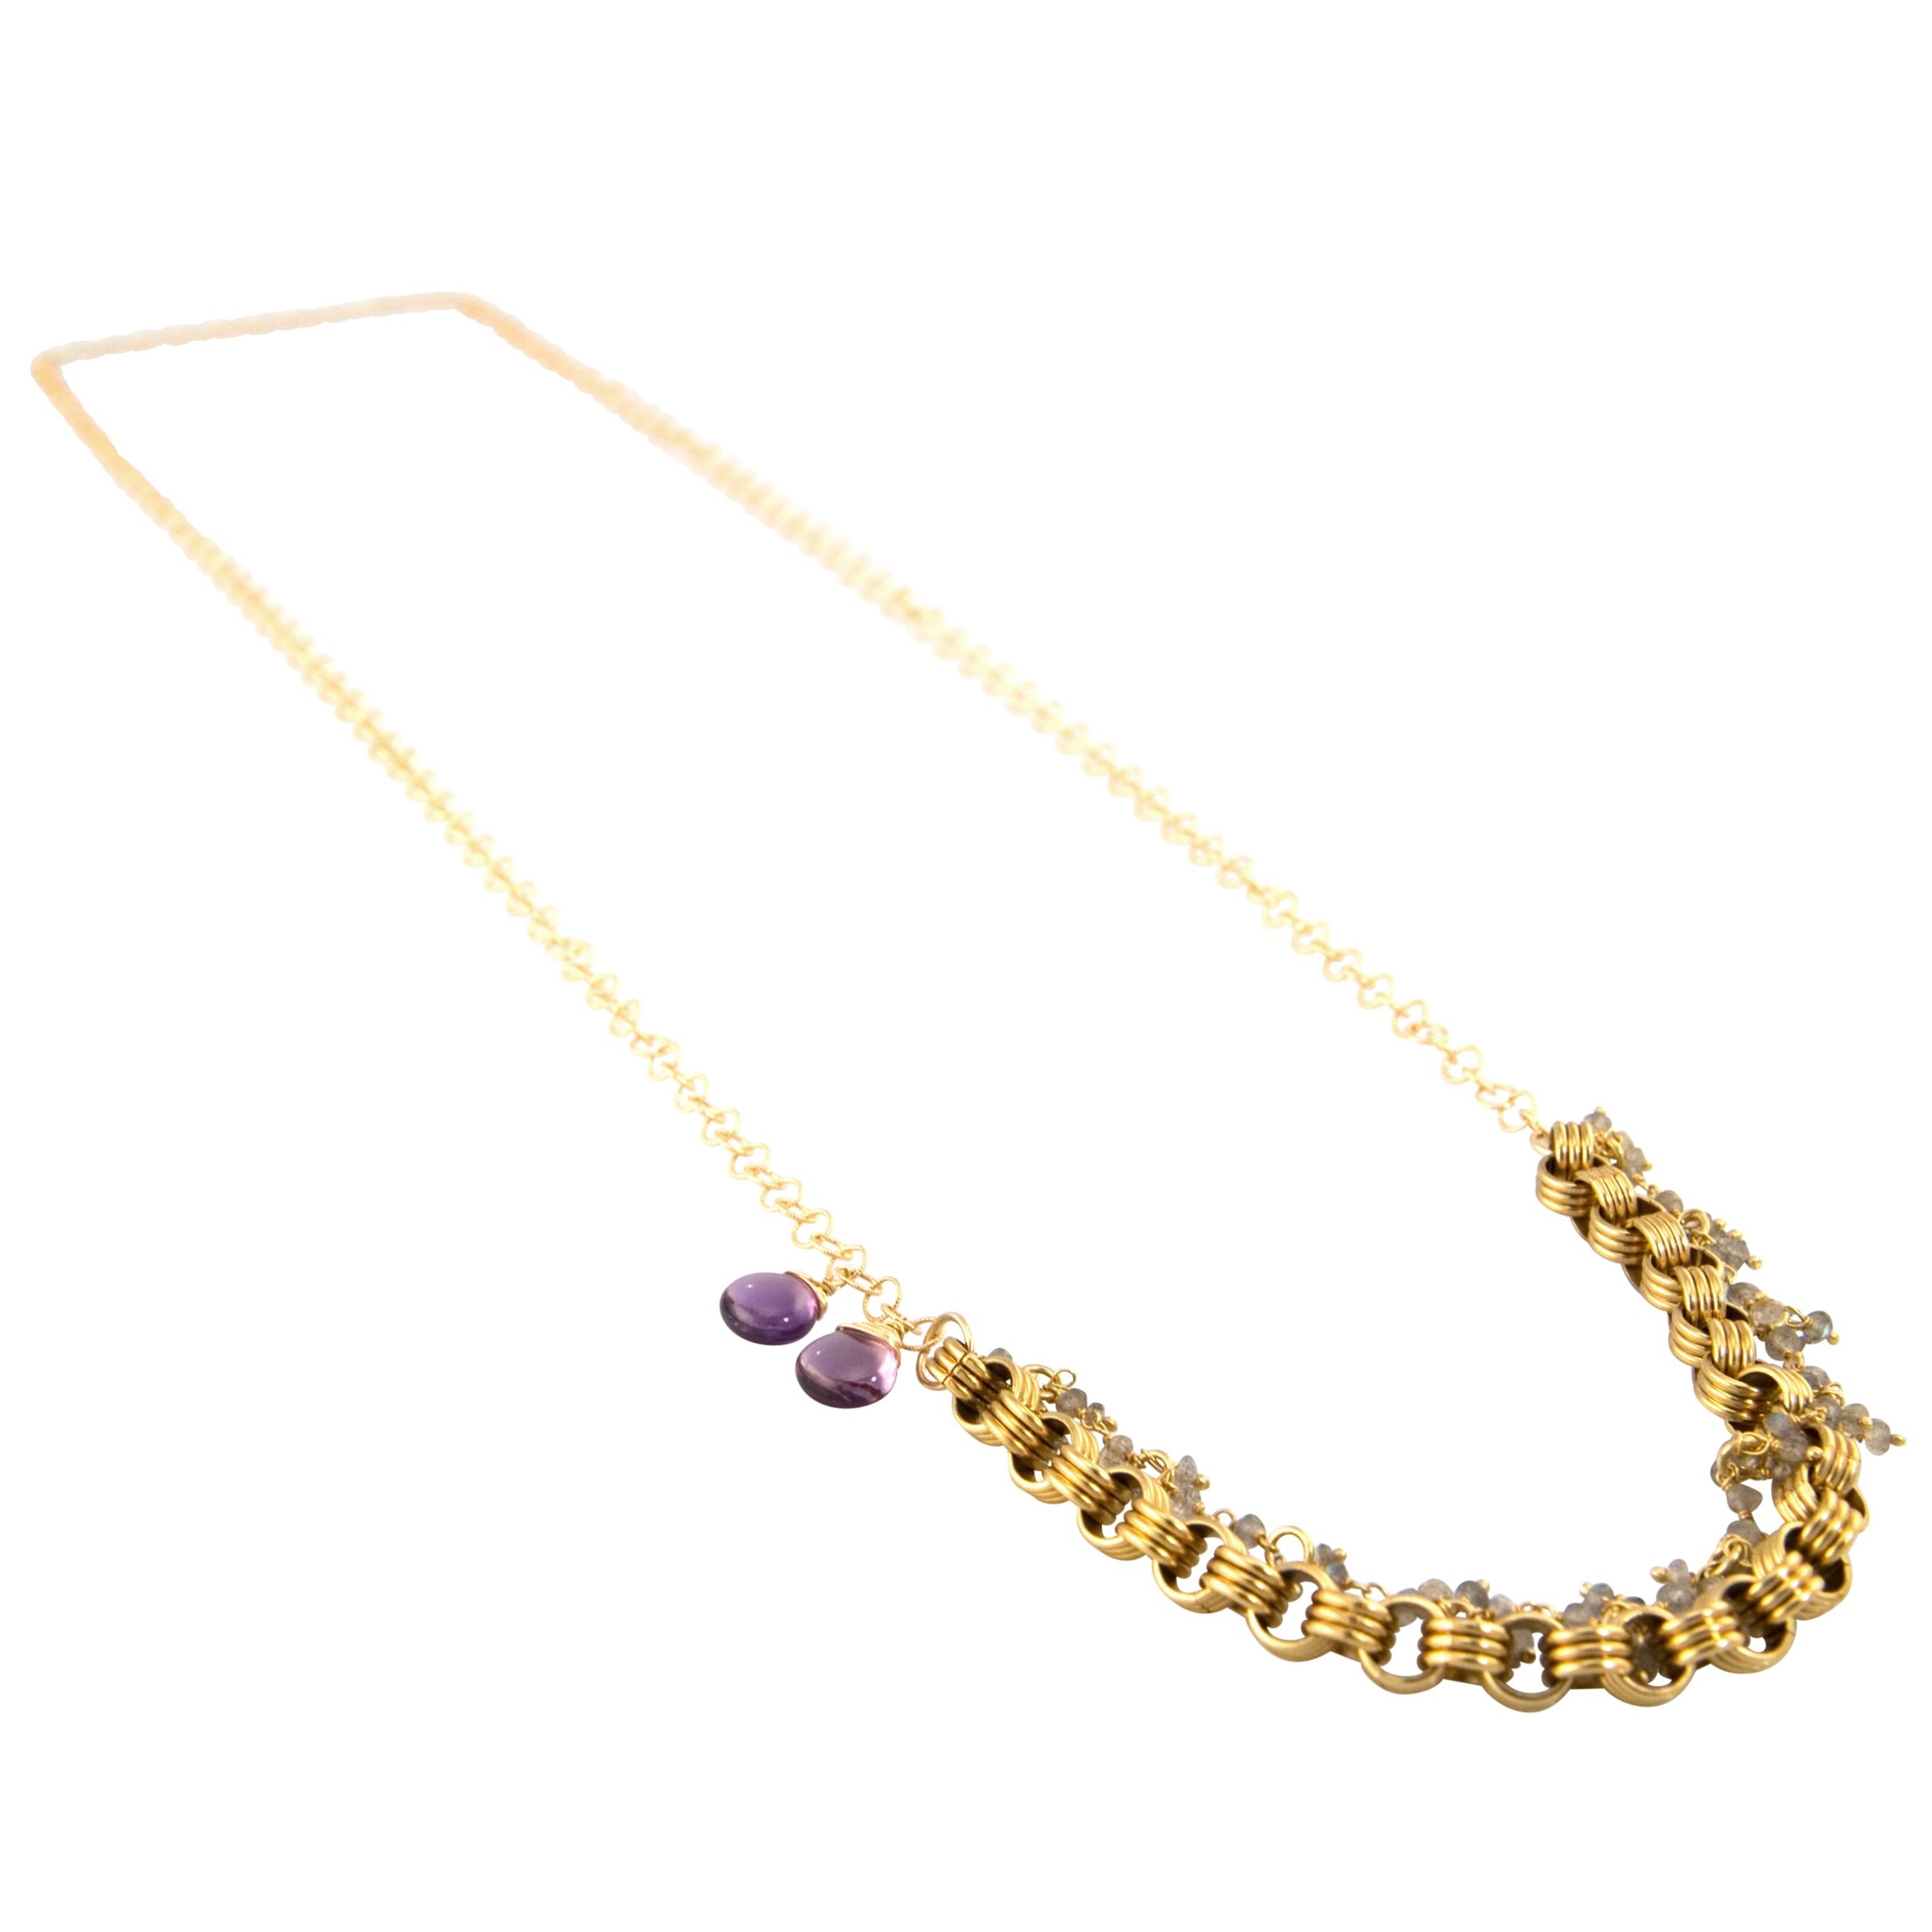 RueBelle 14ct Gold Filled Vintage Charm Necklace at John Lewis